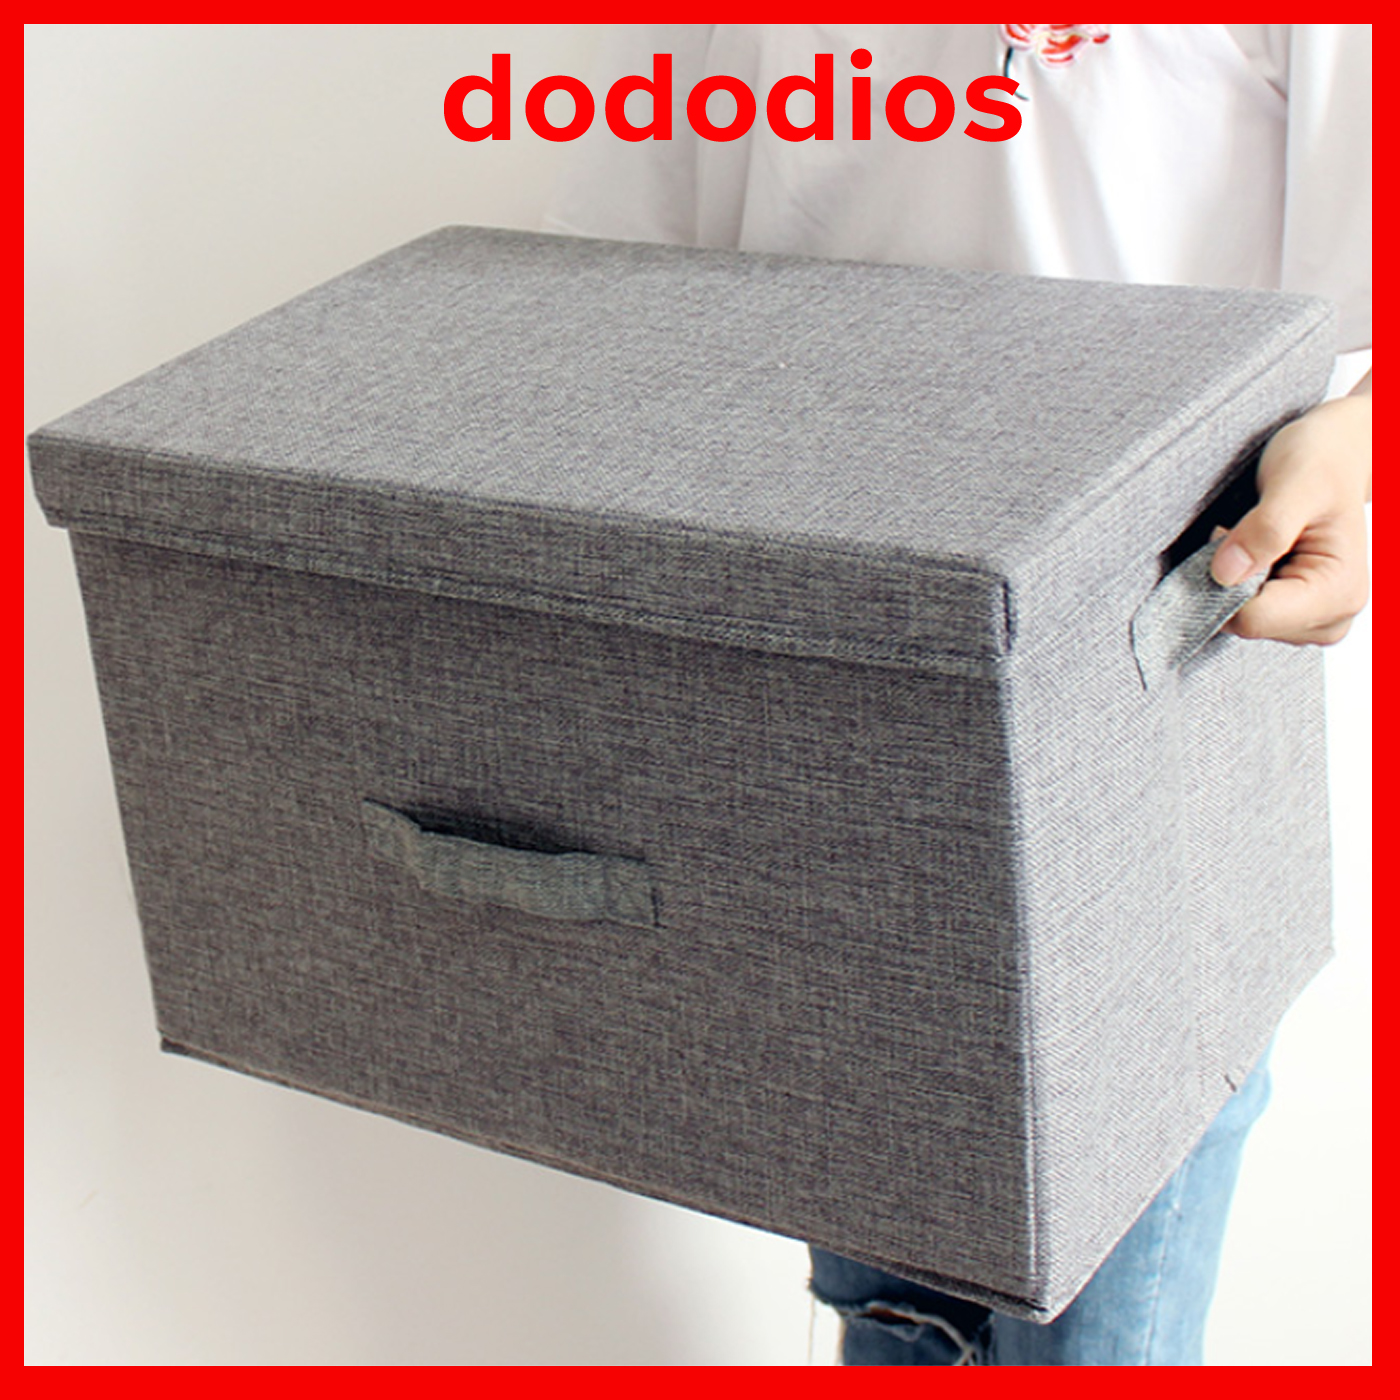 Hộp vải đựng đồ BA03 đa năng, thùng đựng quần áo có nắp rời đậy chắc chắn an toàn dododios